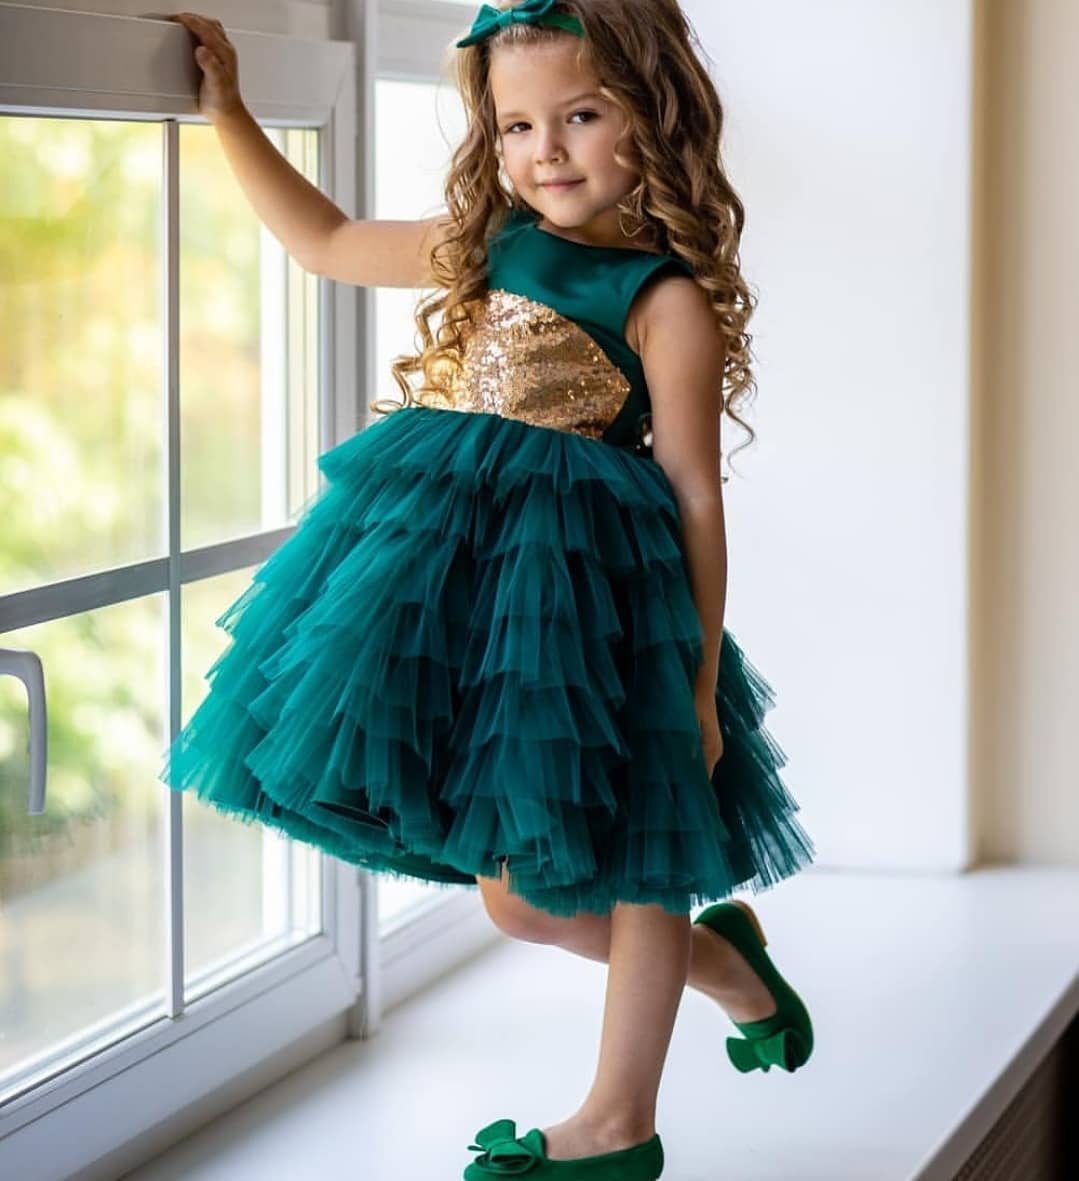  مدل لباس مجلسی دختربچه اینستاگرام 